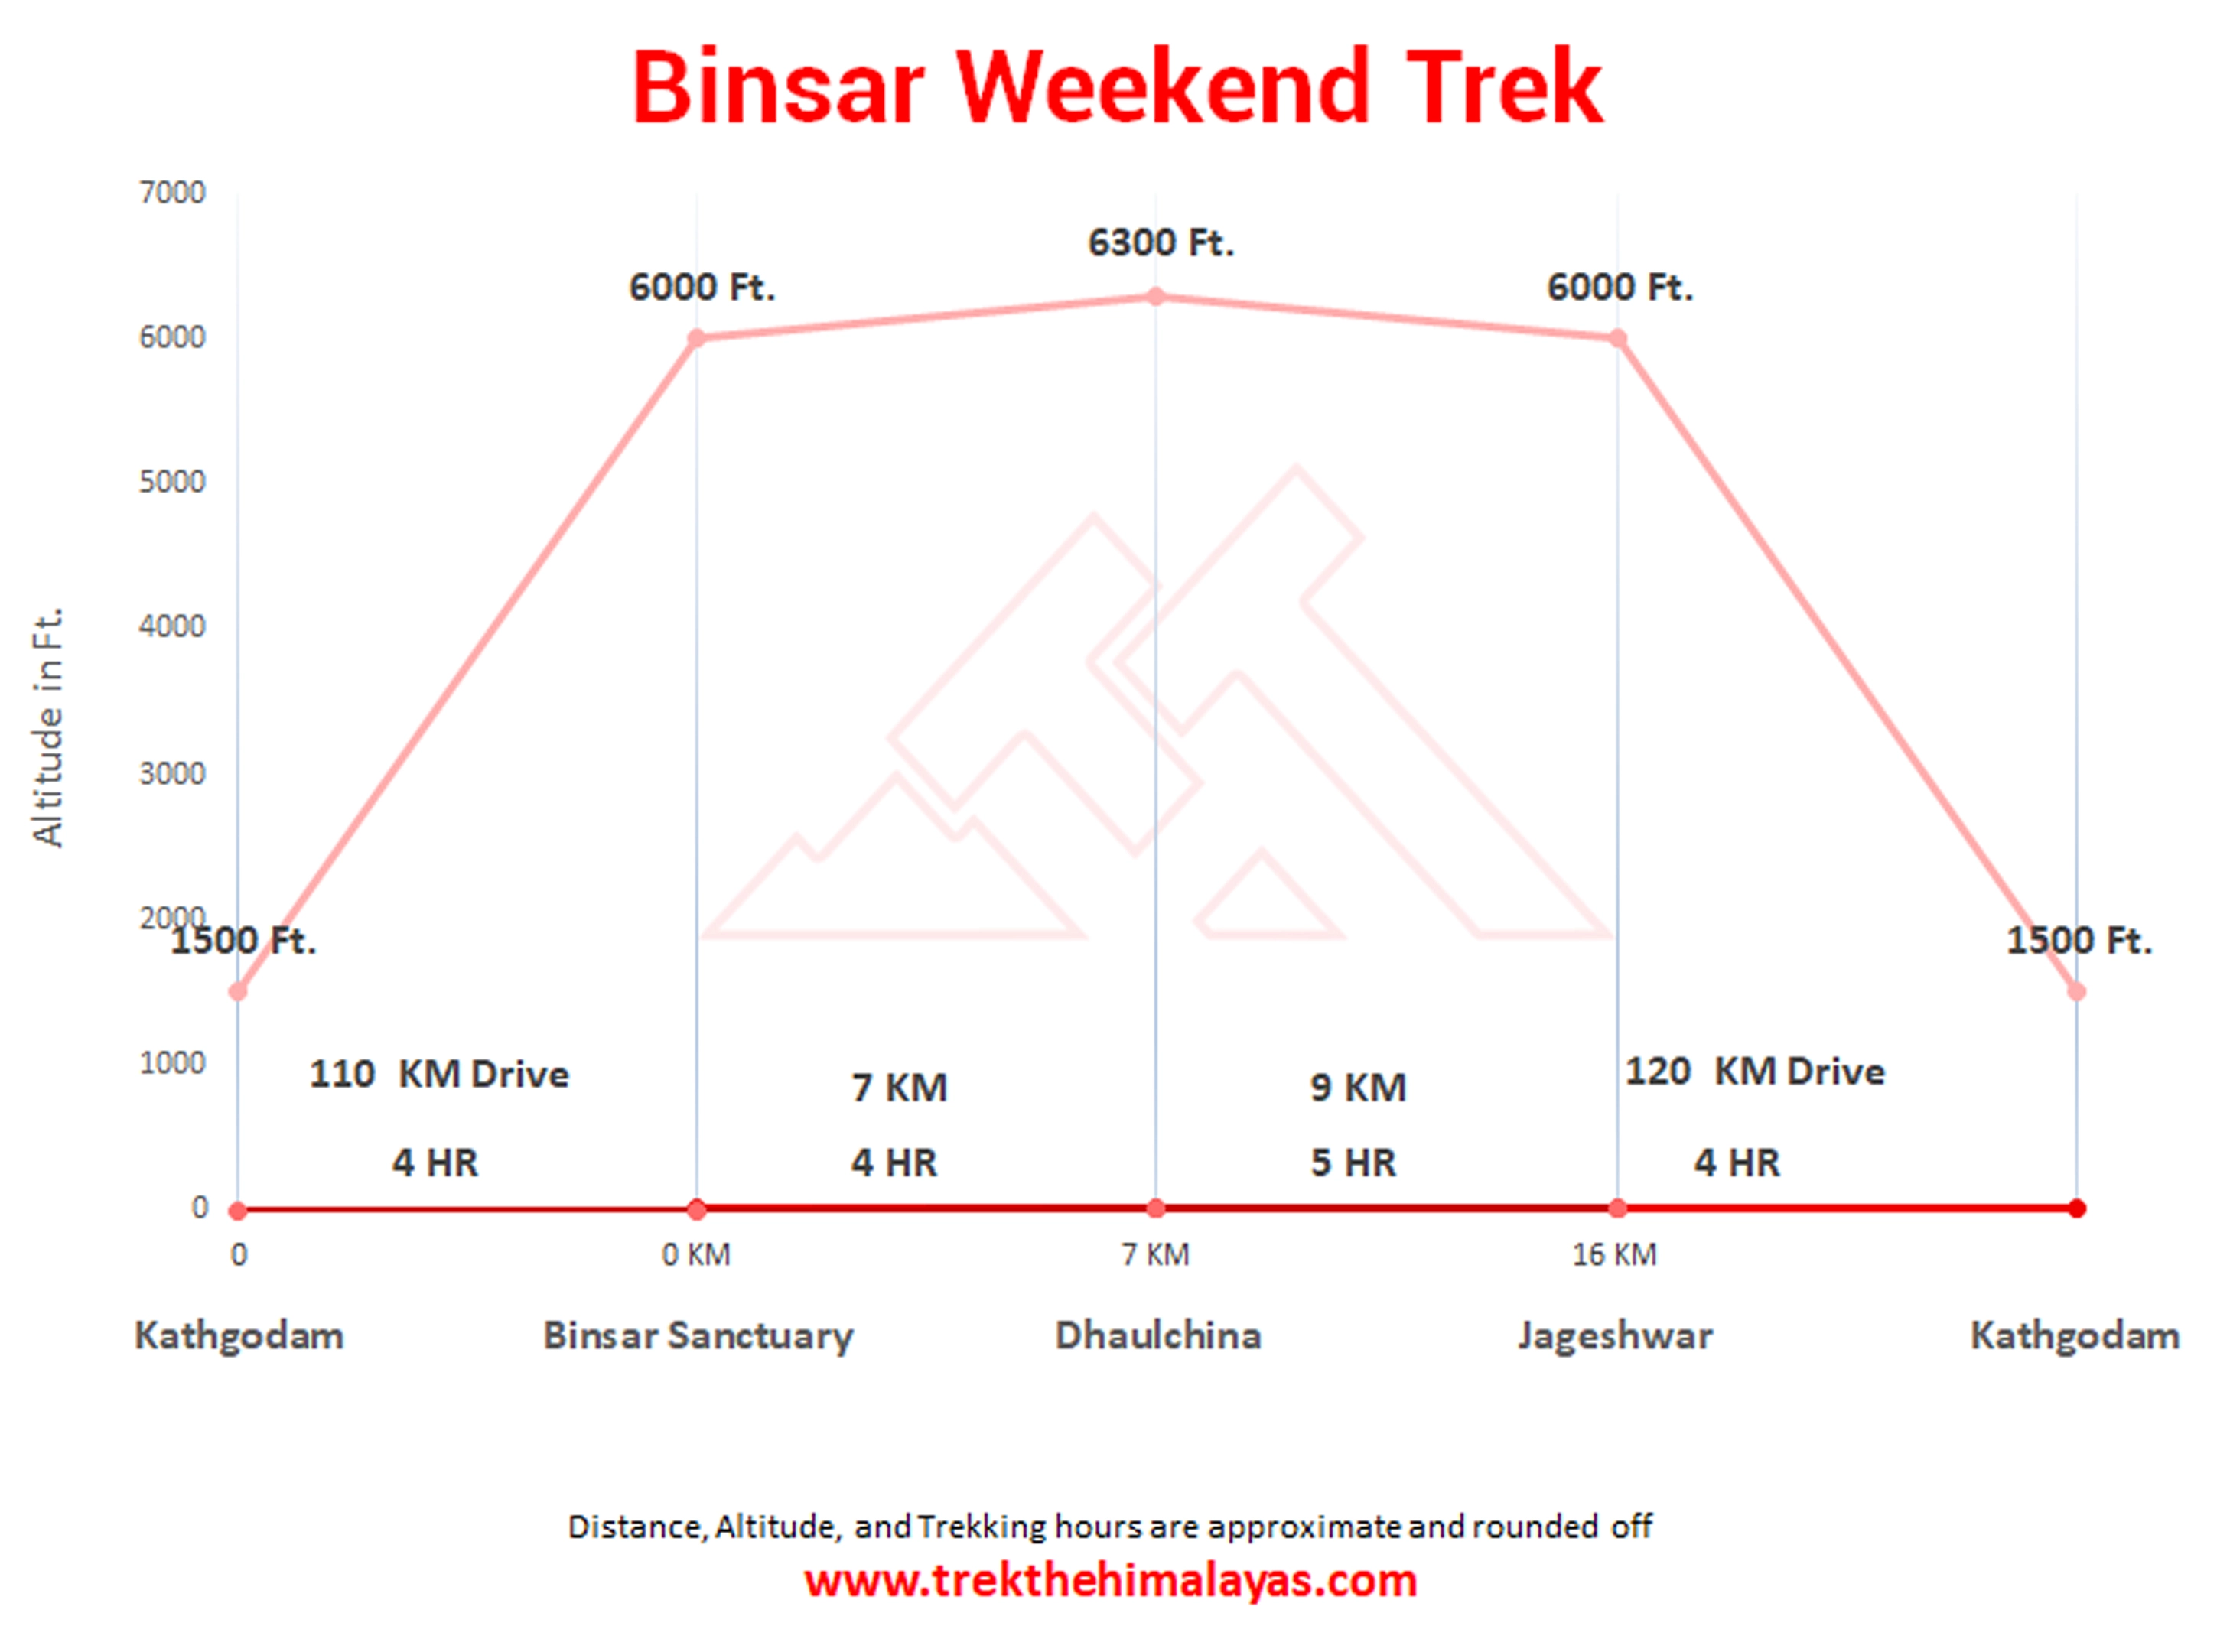 Binsar Weekend Trek Maps